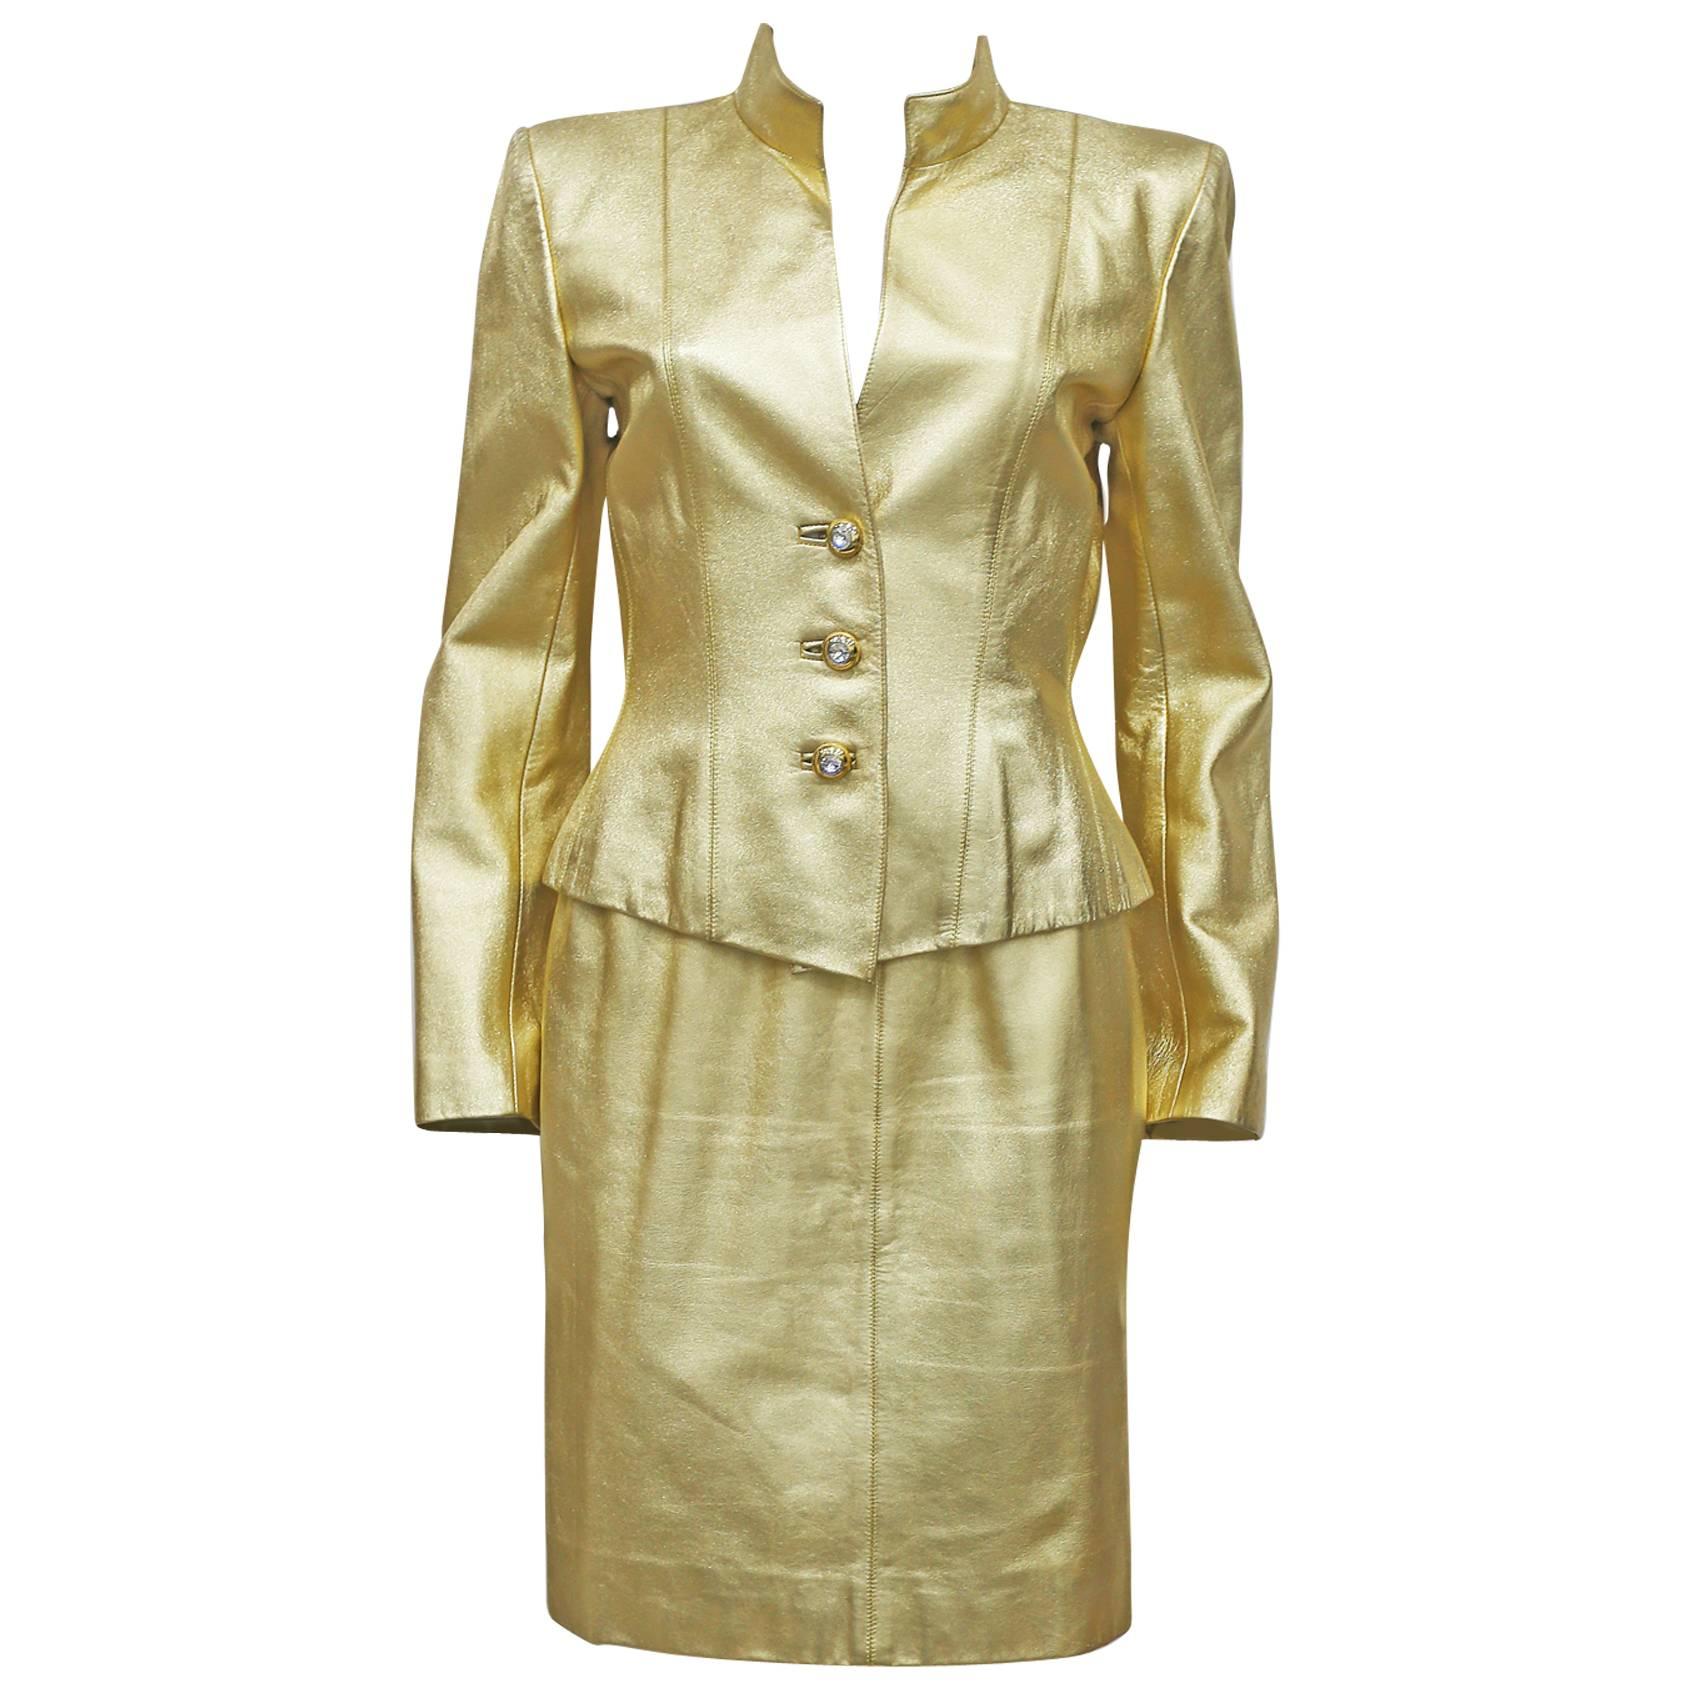 Yves Saint Laurent Gold Leather Skirt Suit, c. 1979